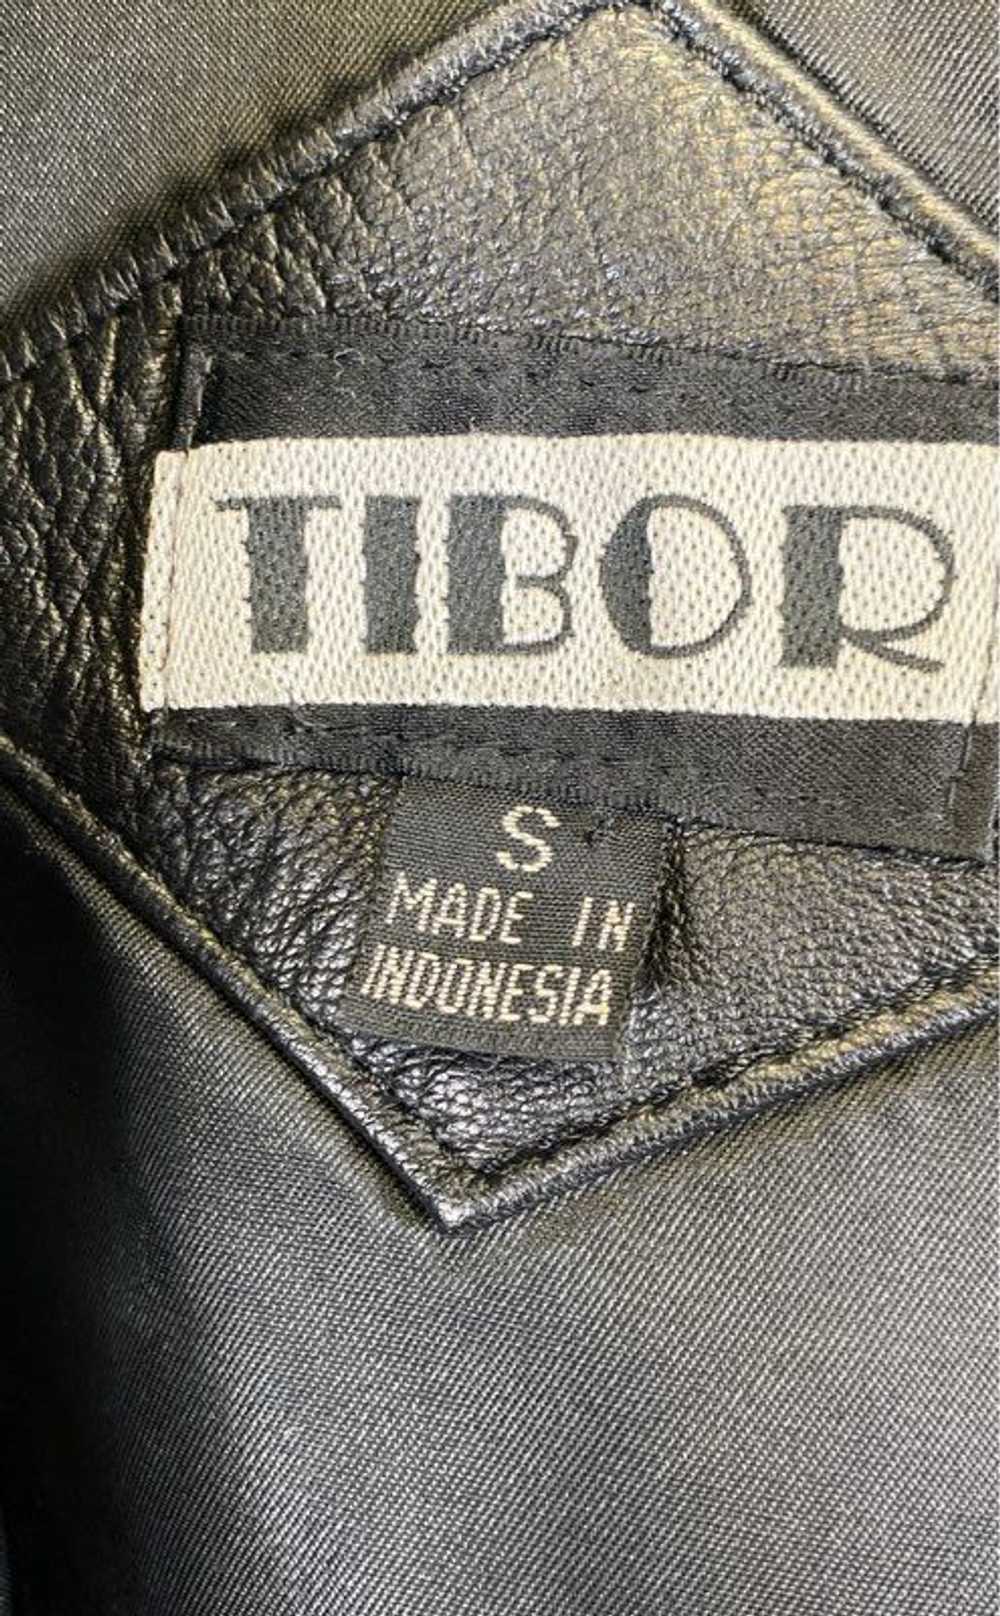 Tibor Black Jacket - Size Small - image 3